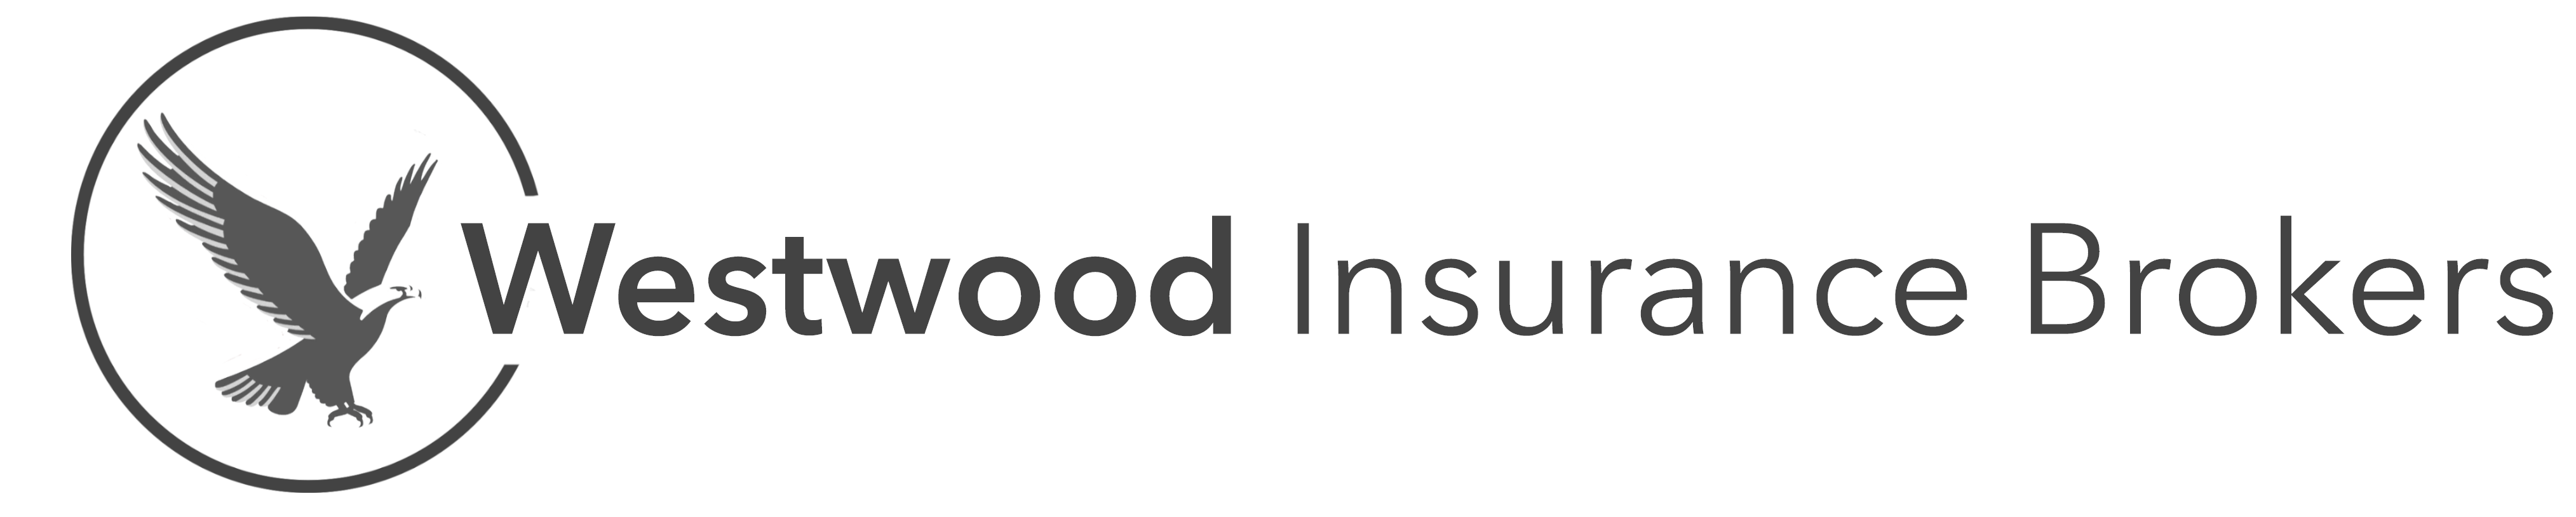 Westwood Insurance Brokers